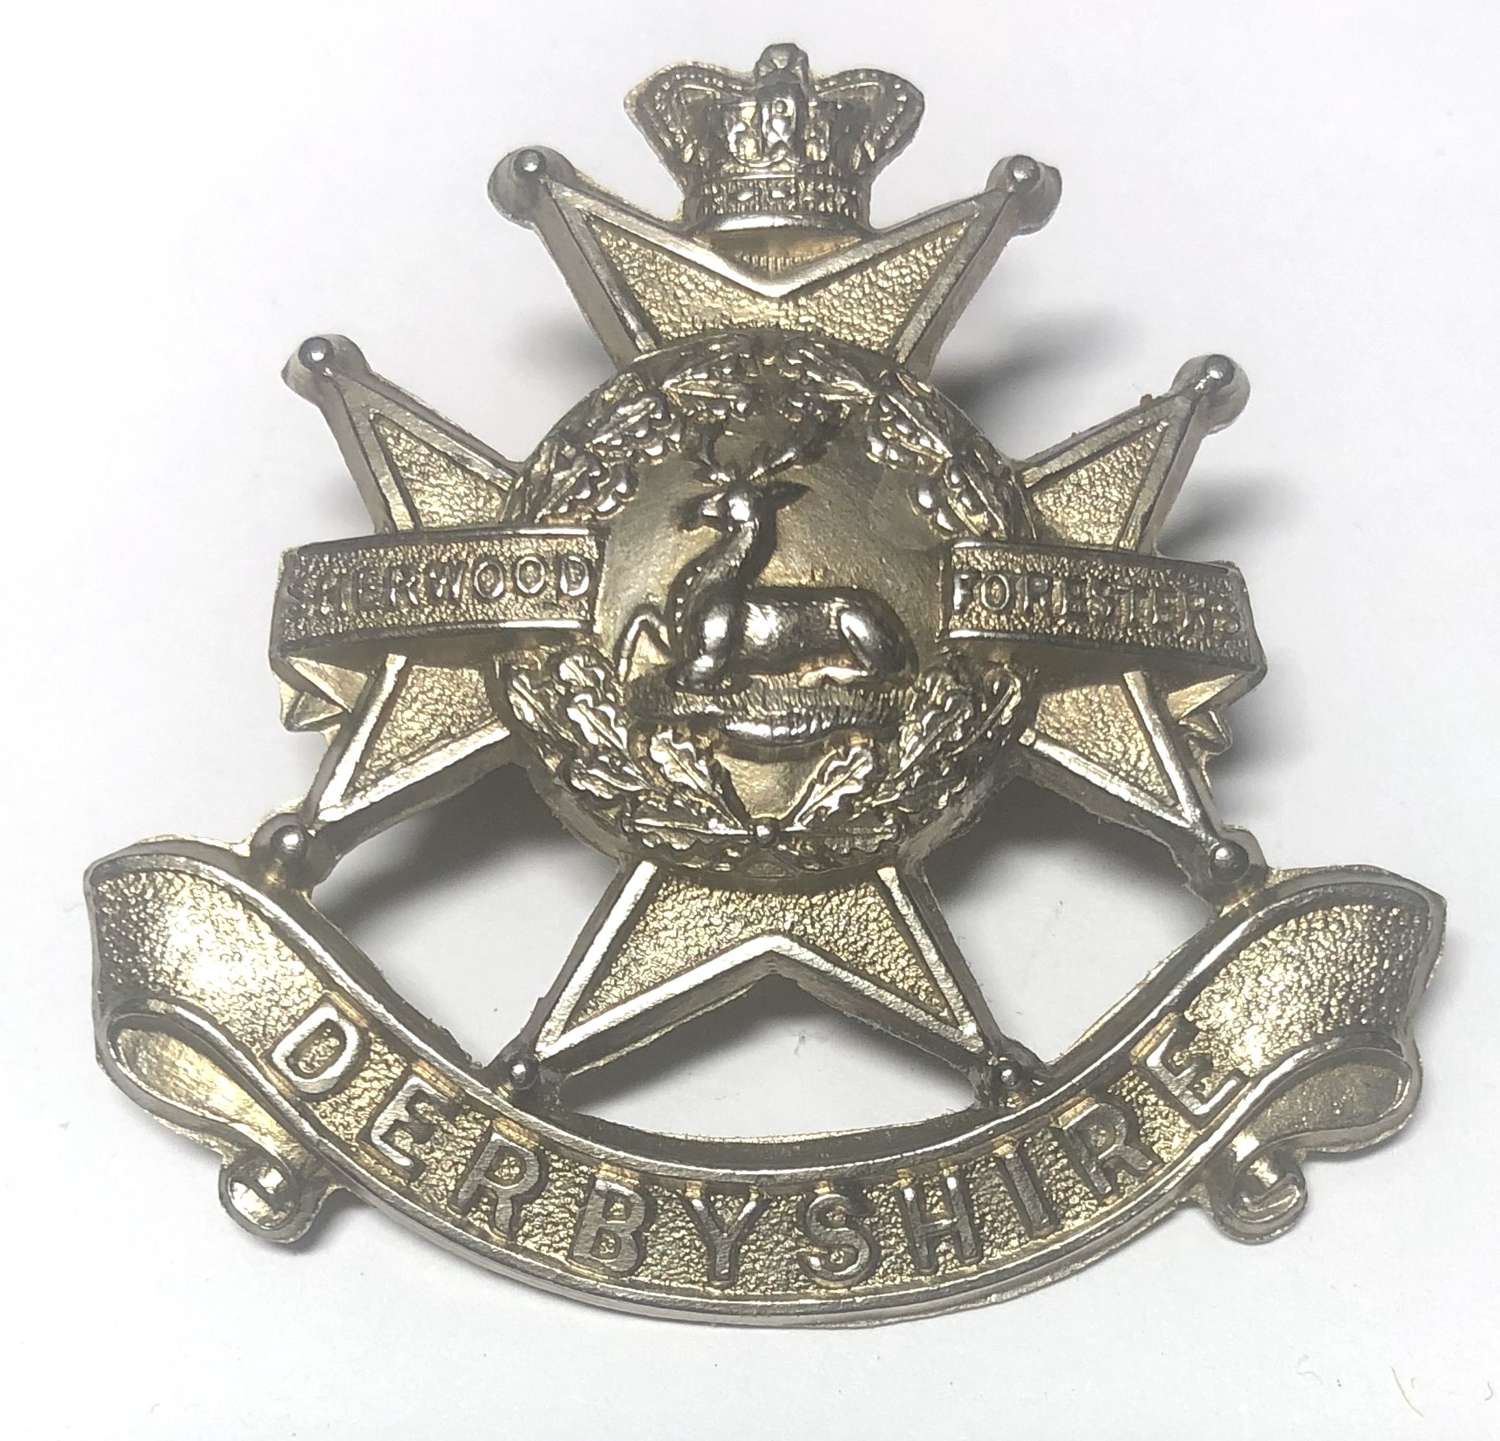 Derbyshire Regiment Victorian VB cap badge